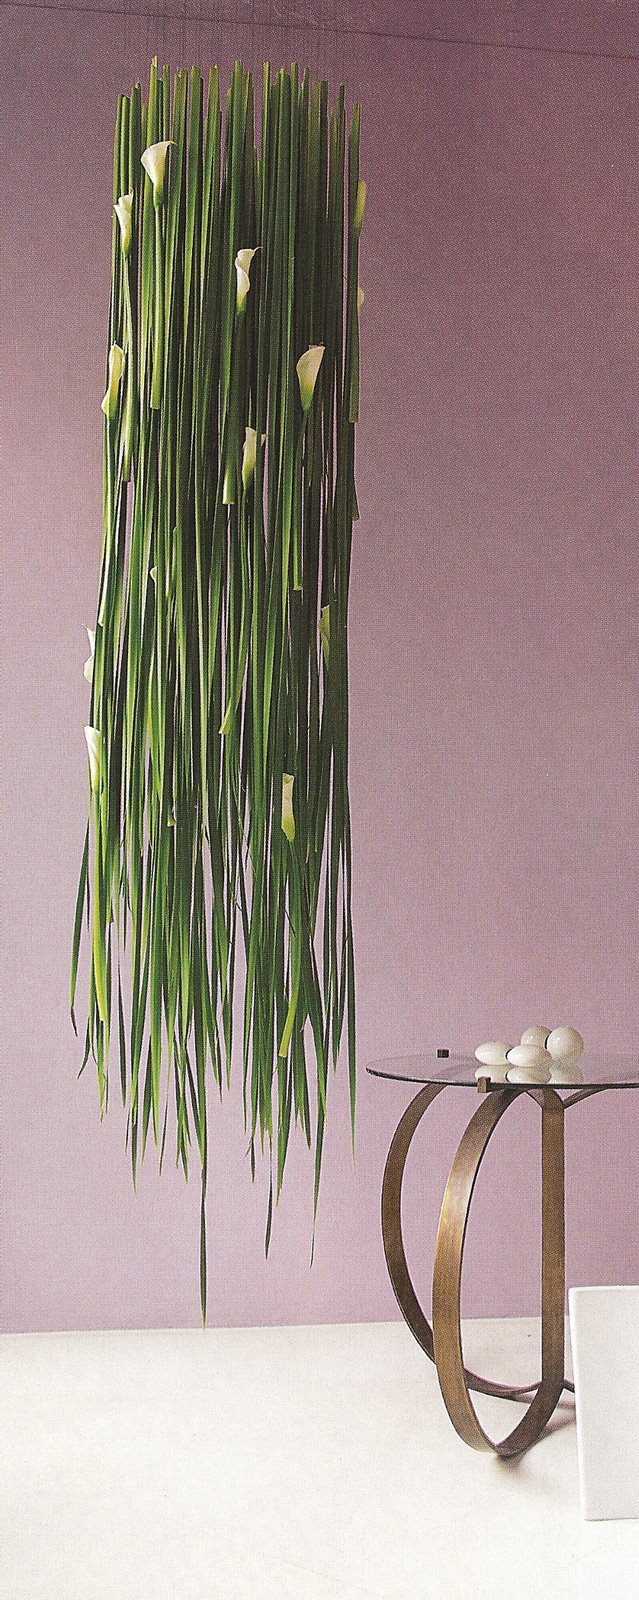 [Sakul+Intakul+orchid+chandelier.jpg]